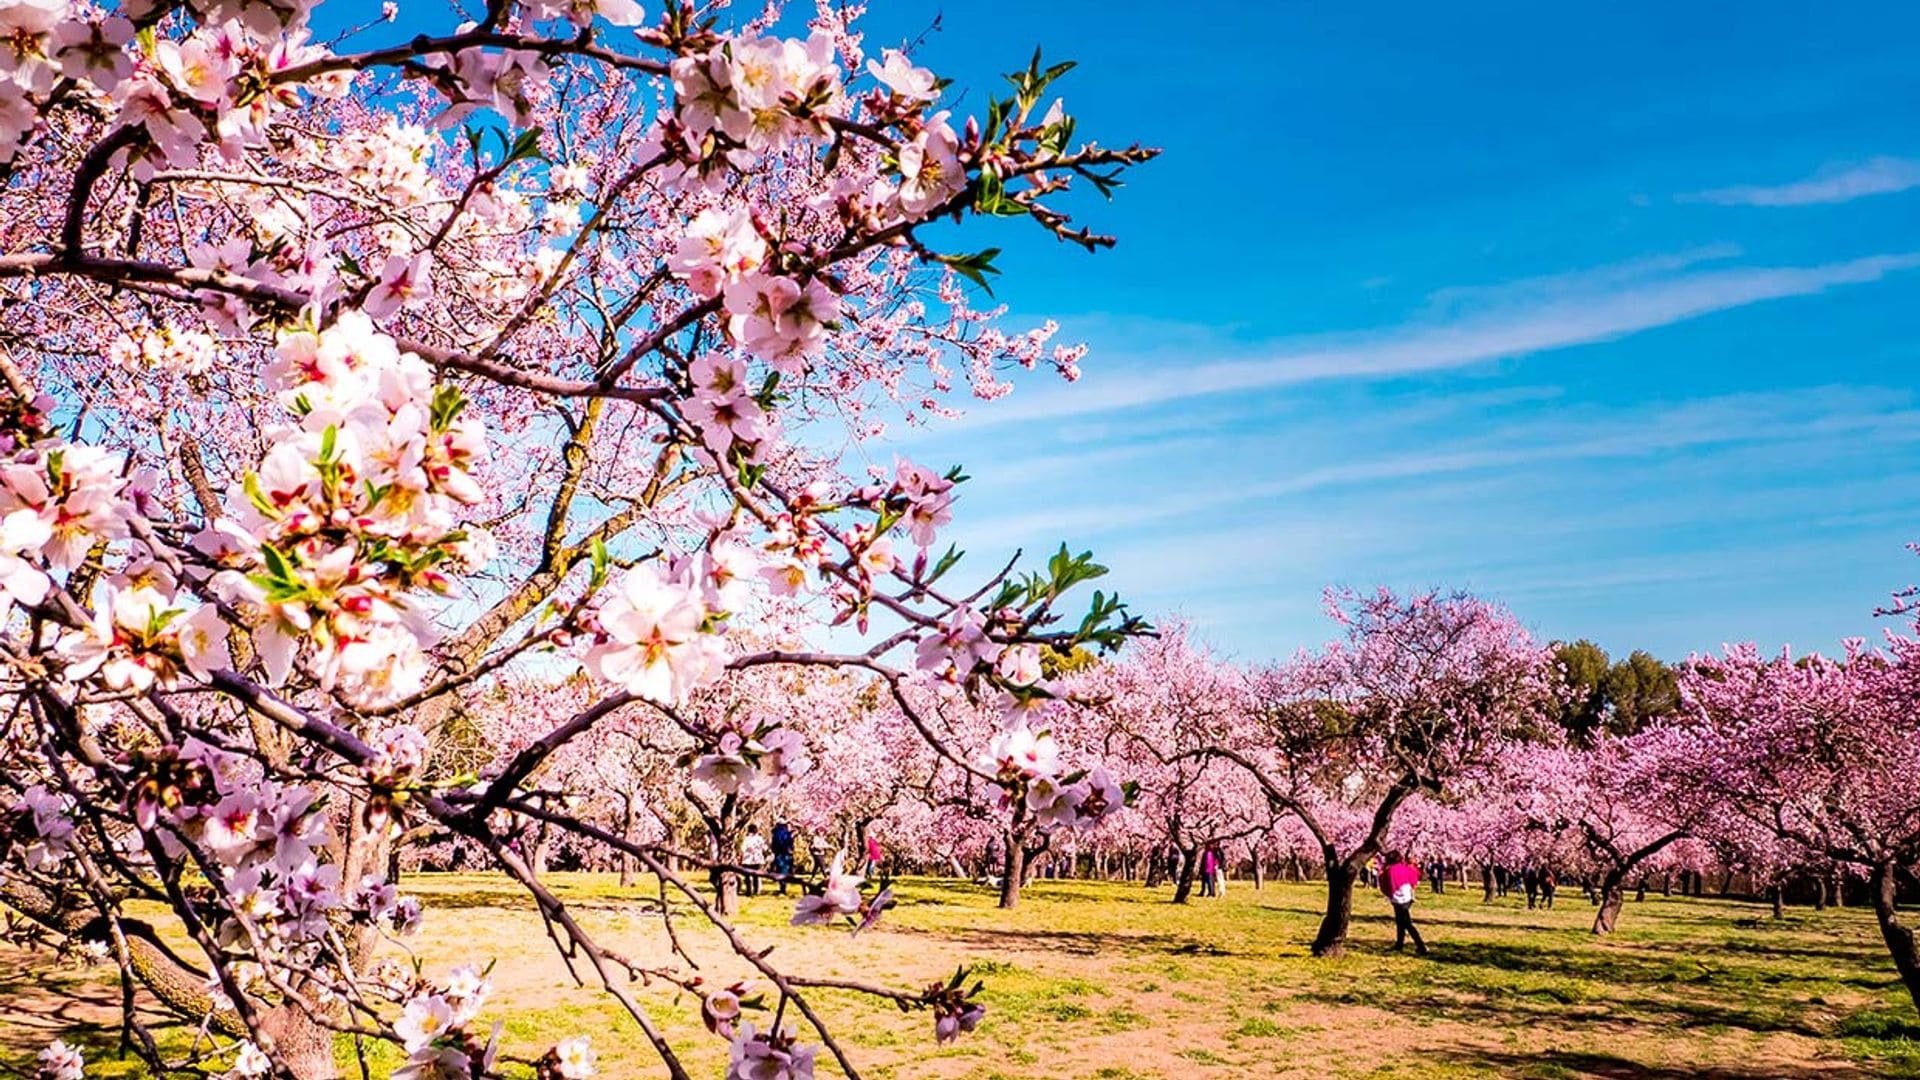 Los mejores sitios de España y Portugal para ver los almendros en flor estos días